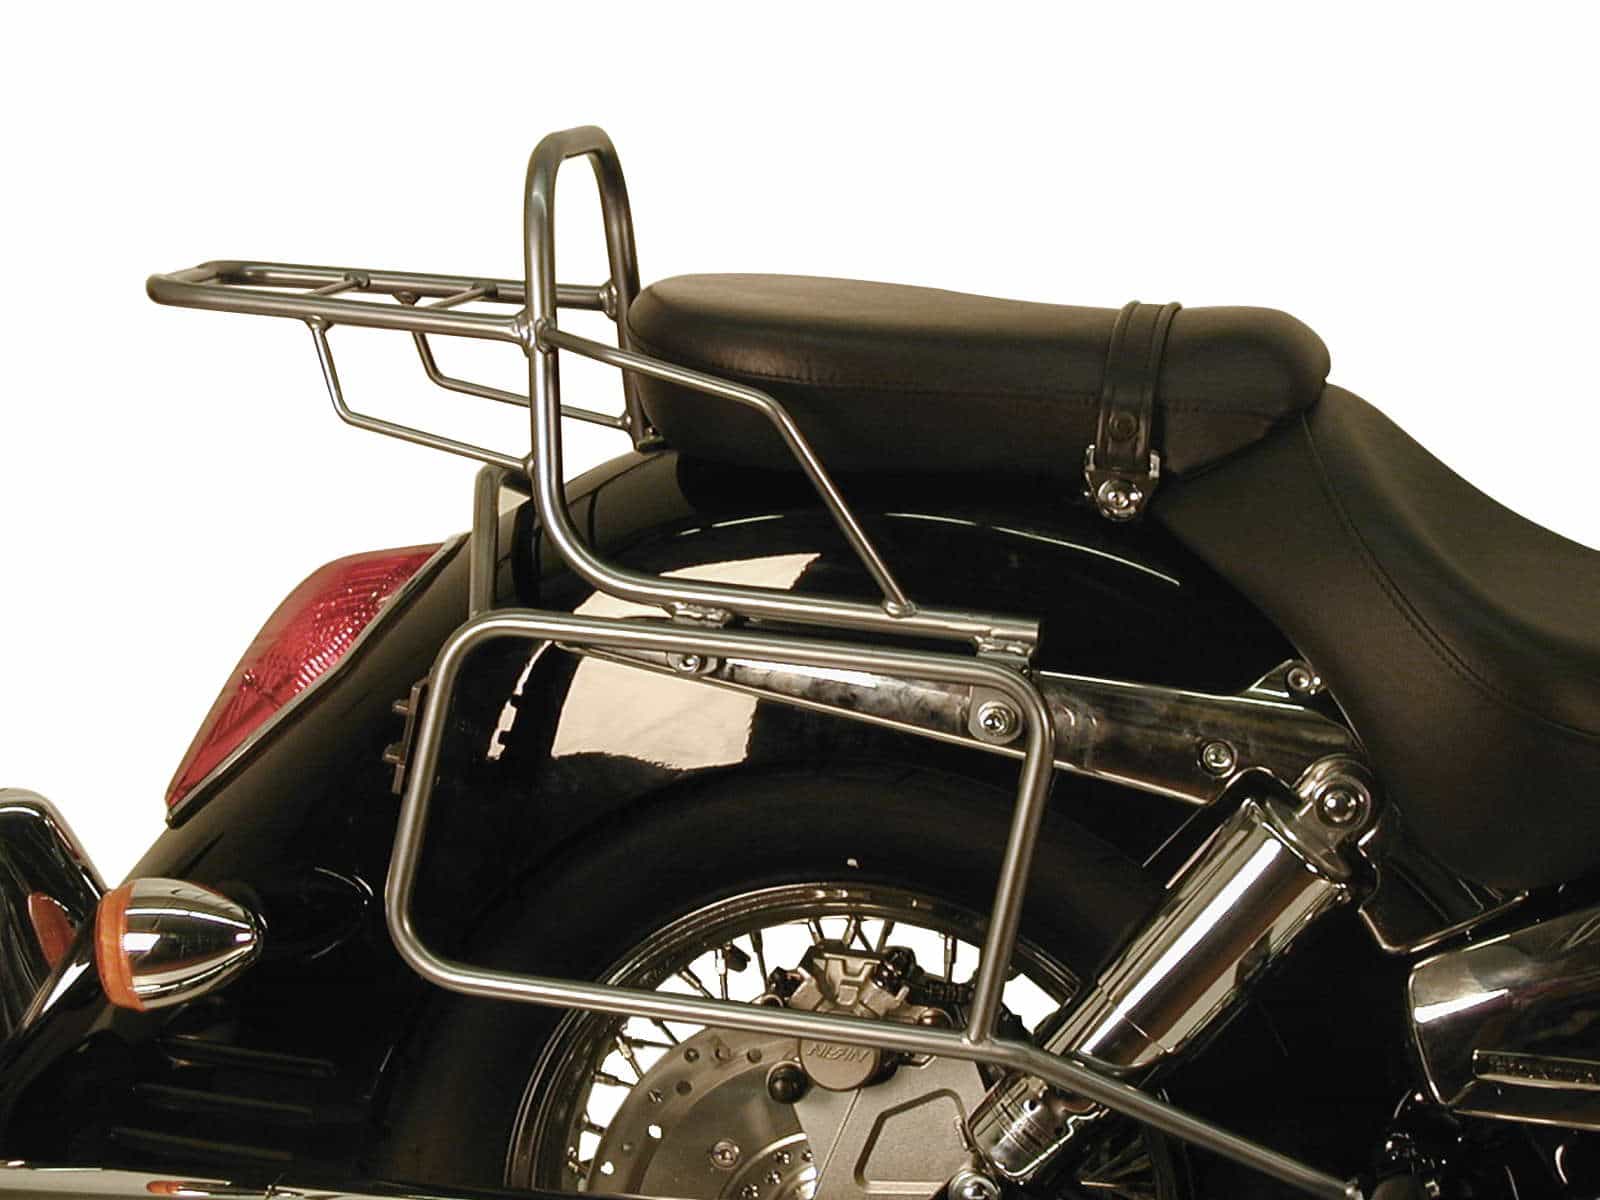 Sidecarrier permanent mounted chrome for Honda VTX 1300 (2003-2007)